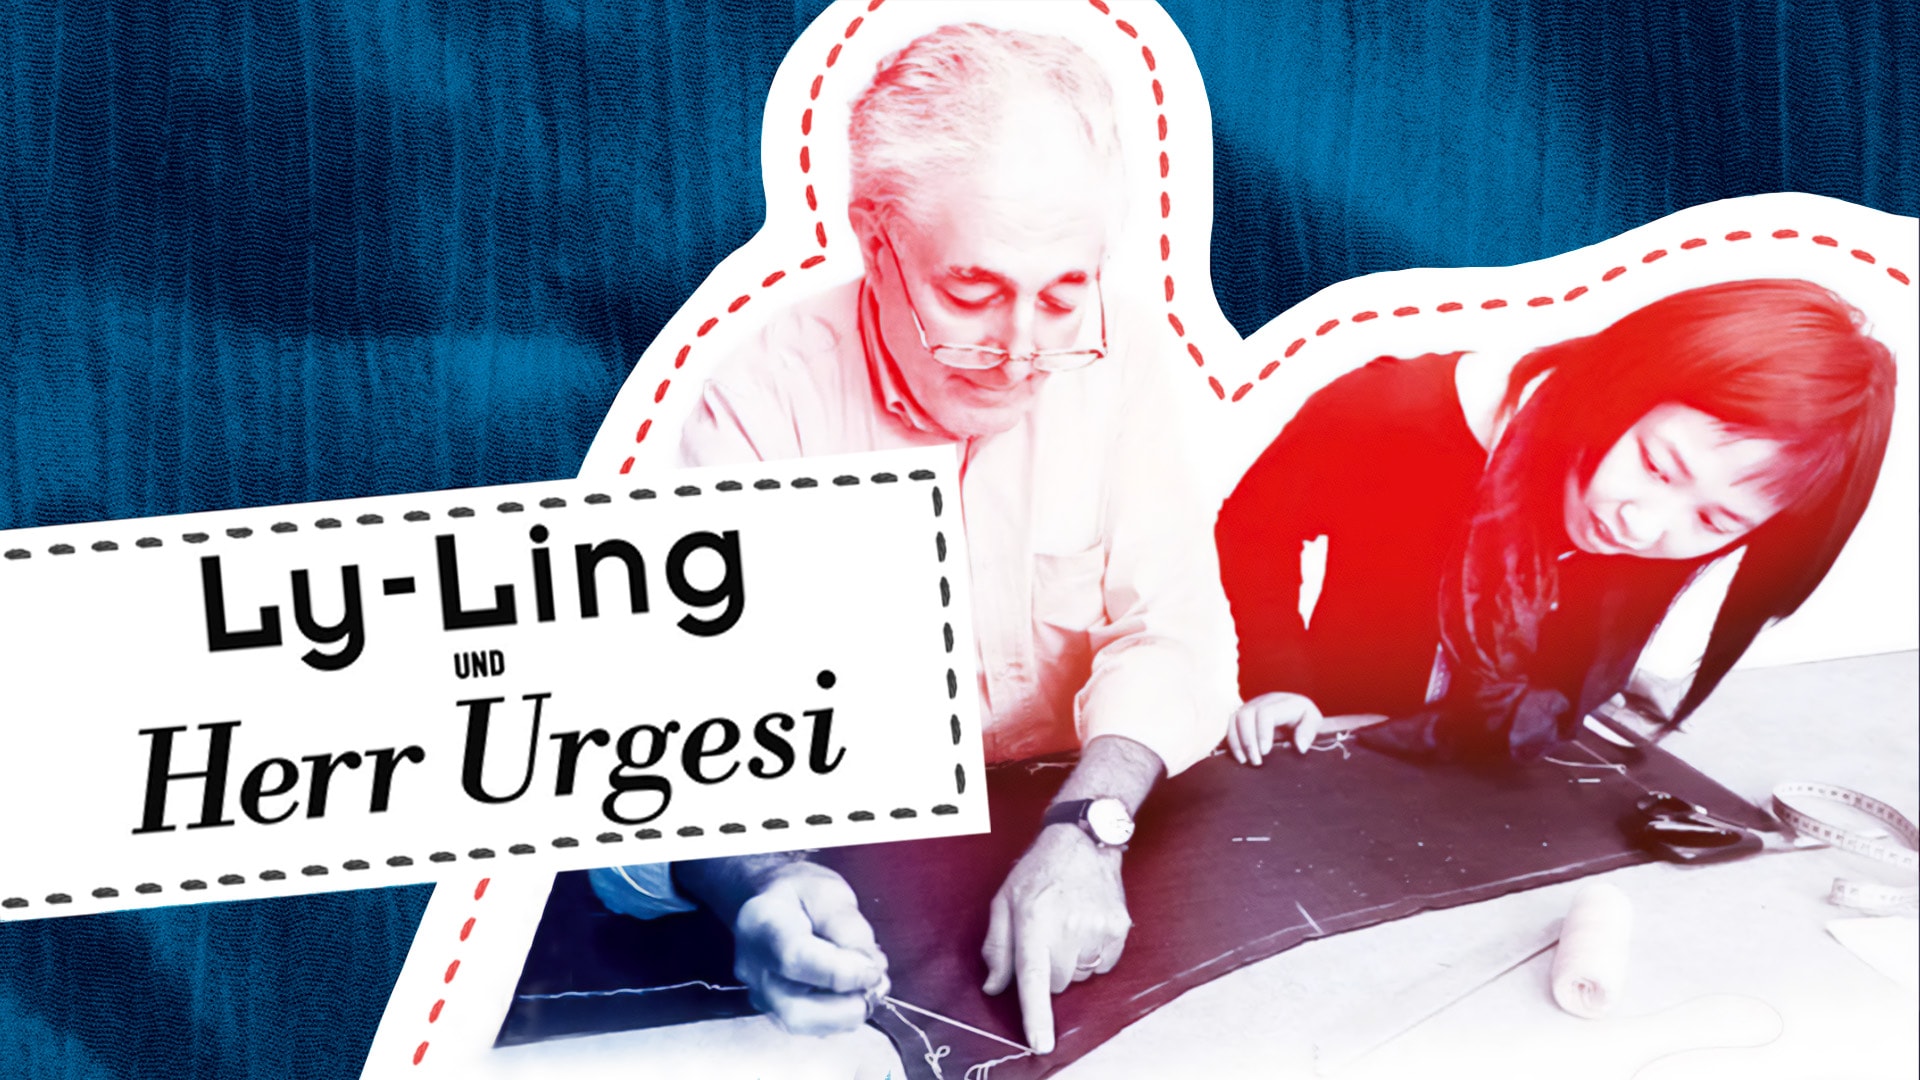 Ly-Ling und Herr Urgesi